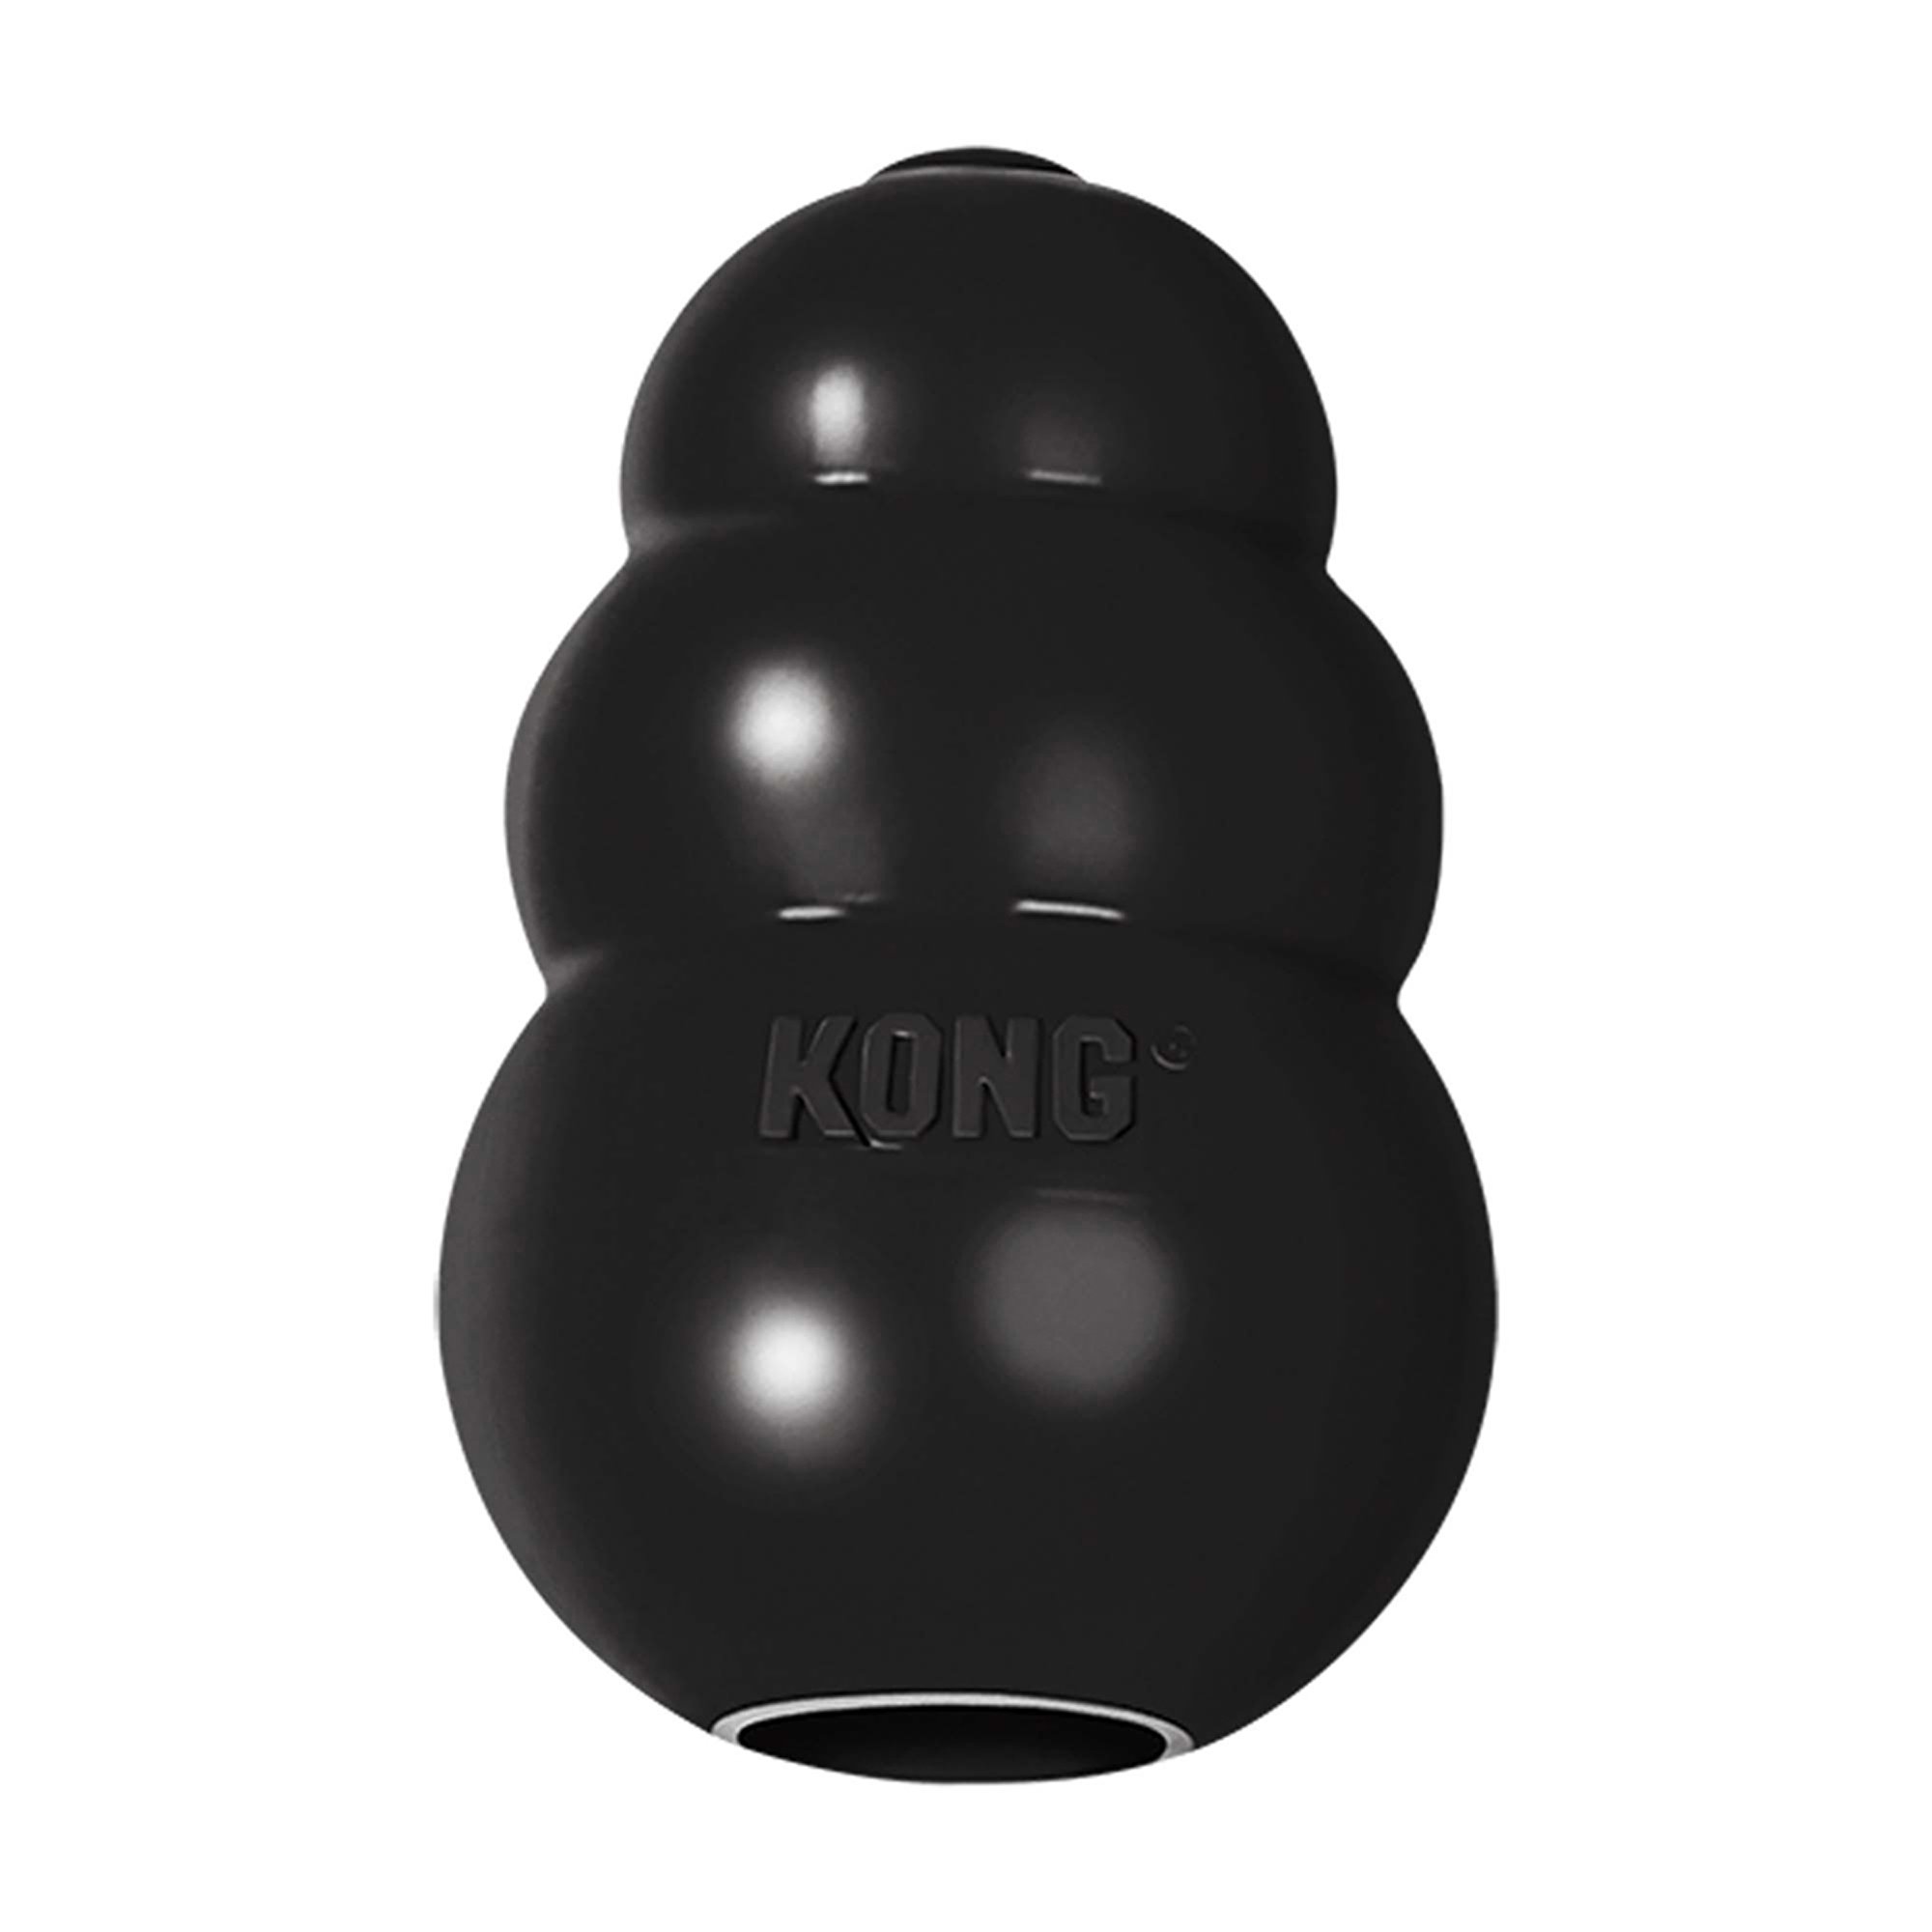 KONG Extreme Dog Toy, Medium, Black